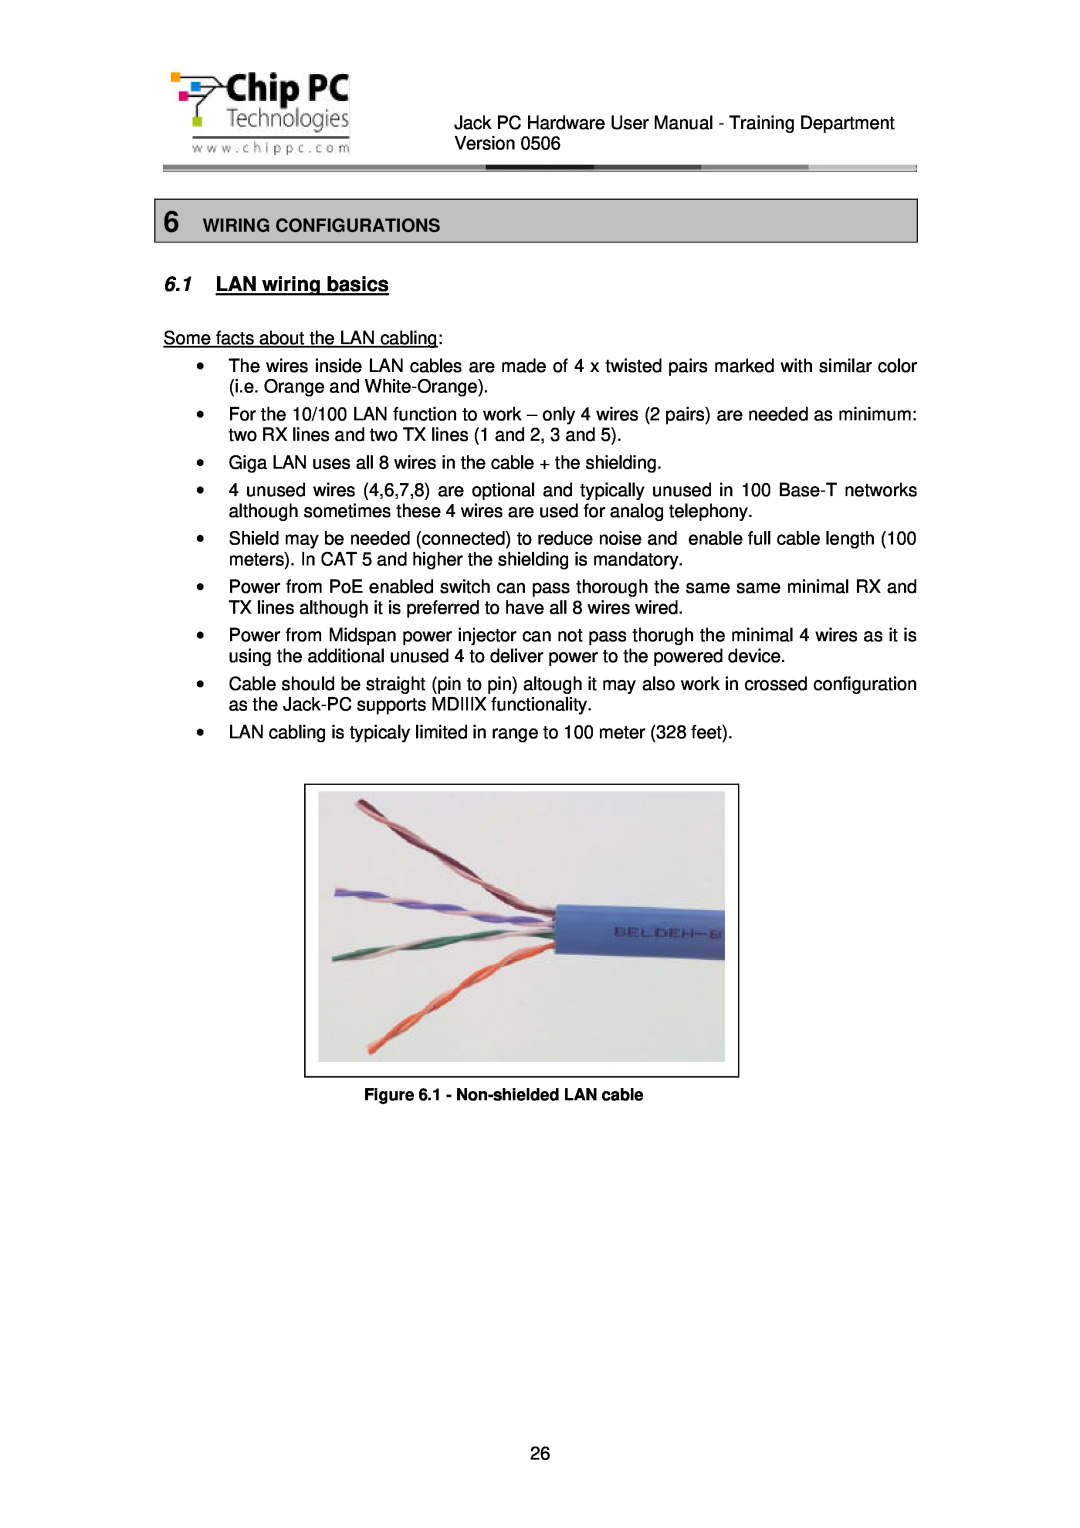 Chip PC CDC01927 manual LAN wiring basics, Wiring Configurations 